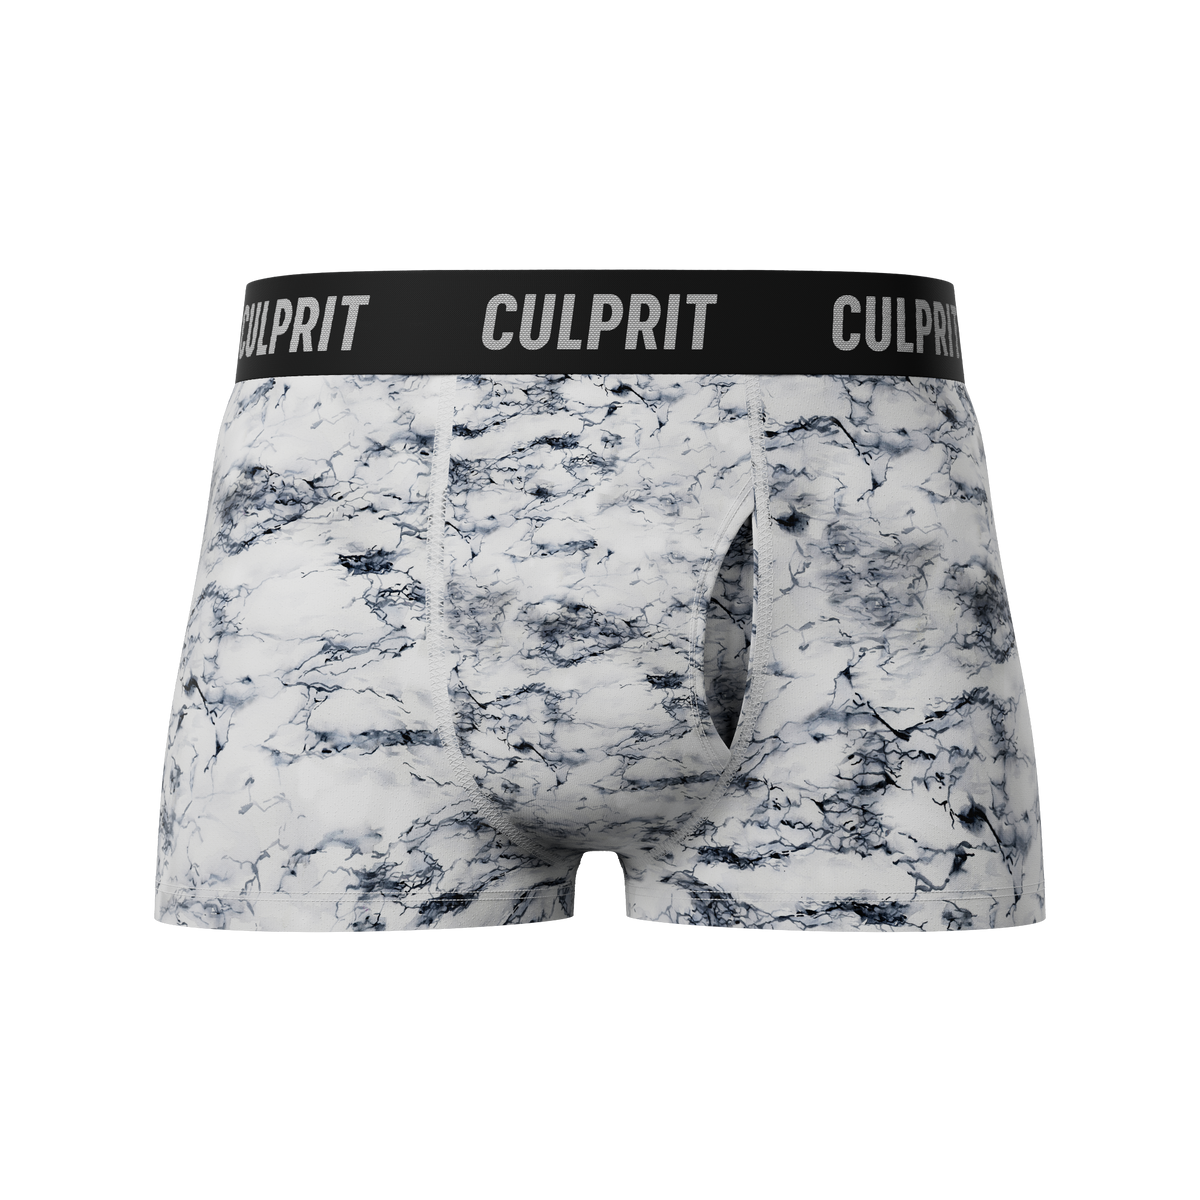 Absinthe Minded 🧚 - Culprit Underwear